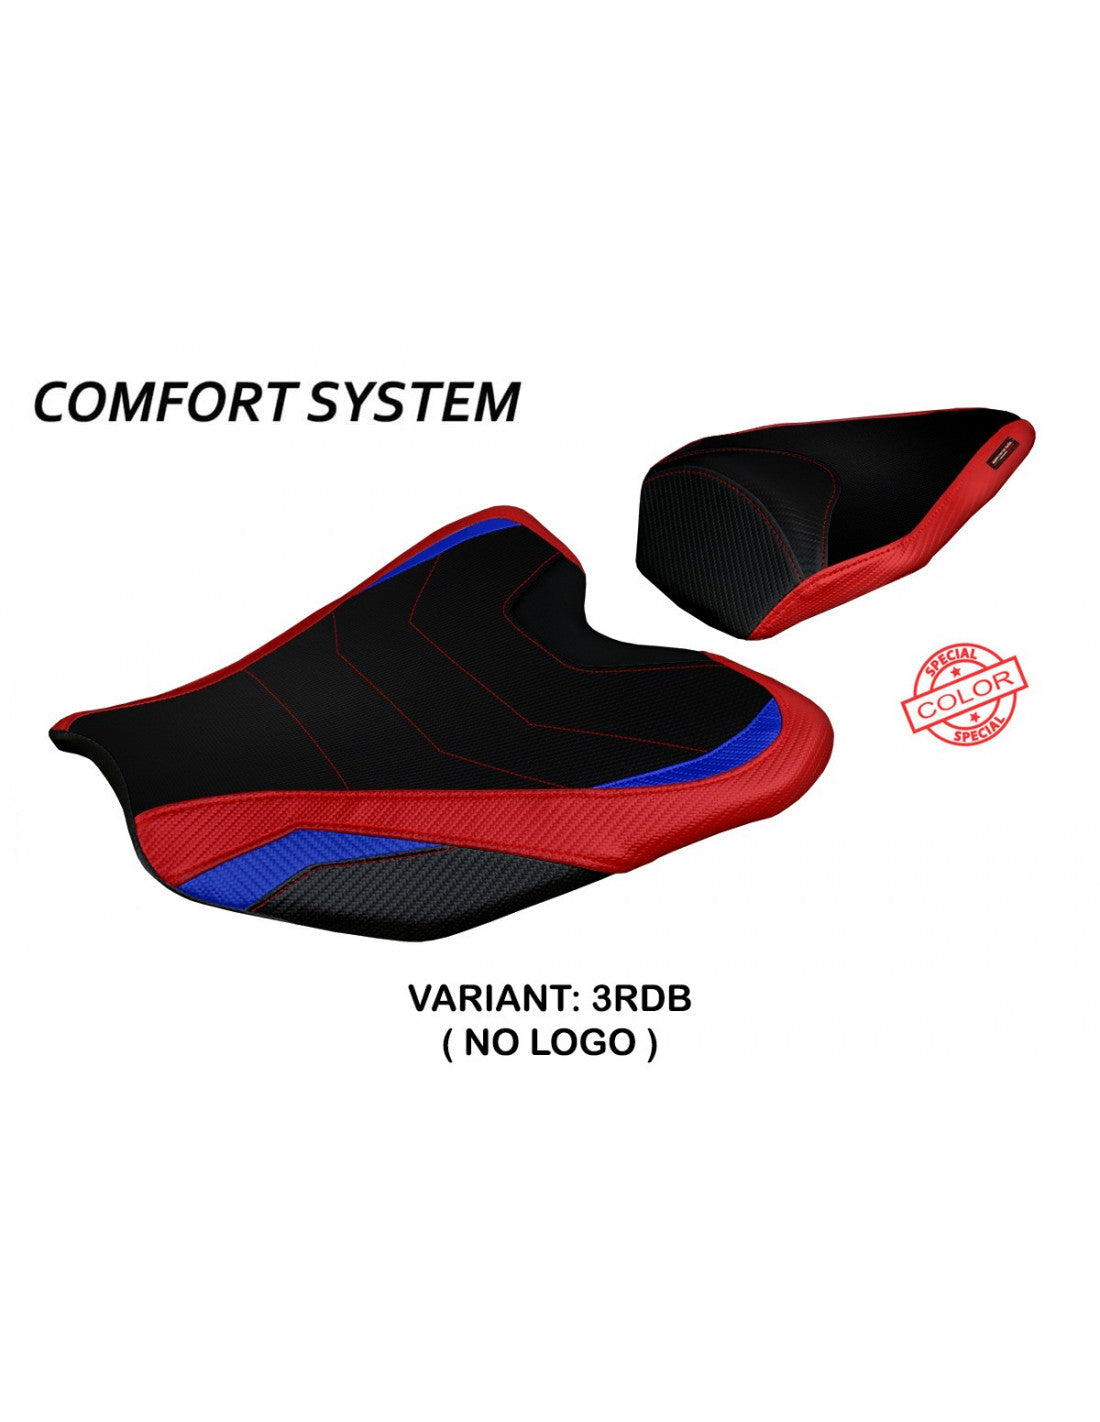 Tappezzeria Pedara Special Color Comfort System Seat Cover for Honda CBR 1000RR